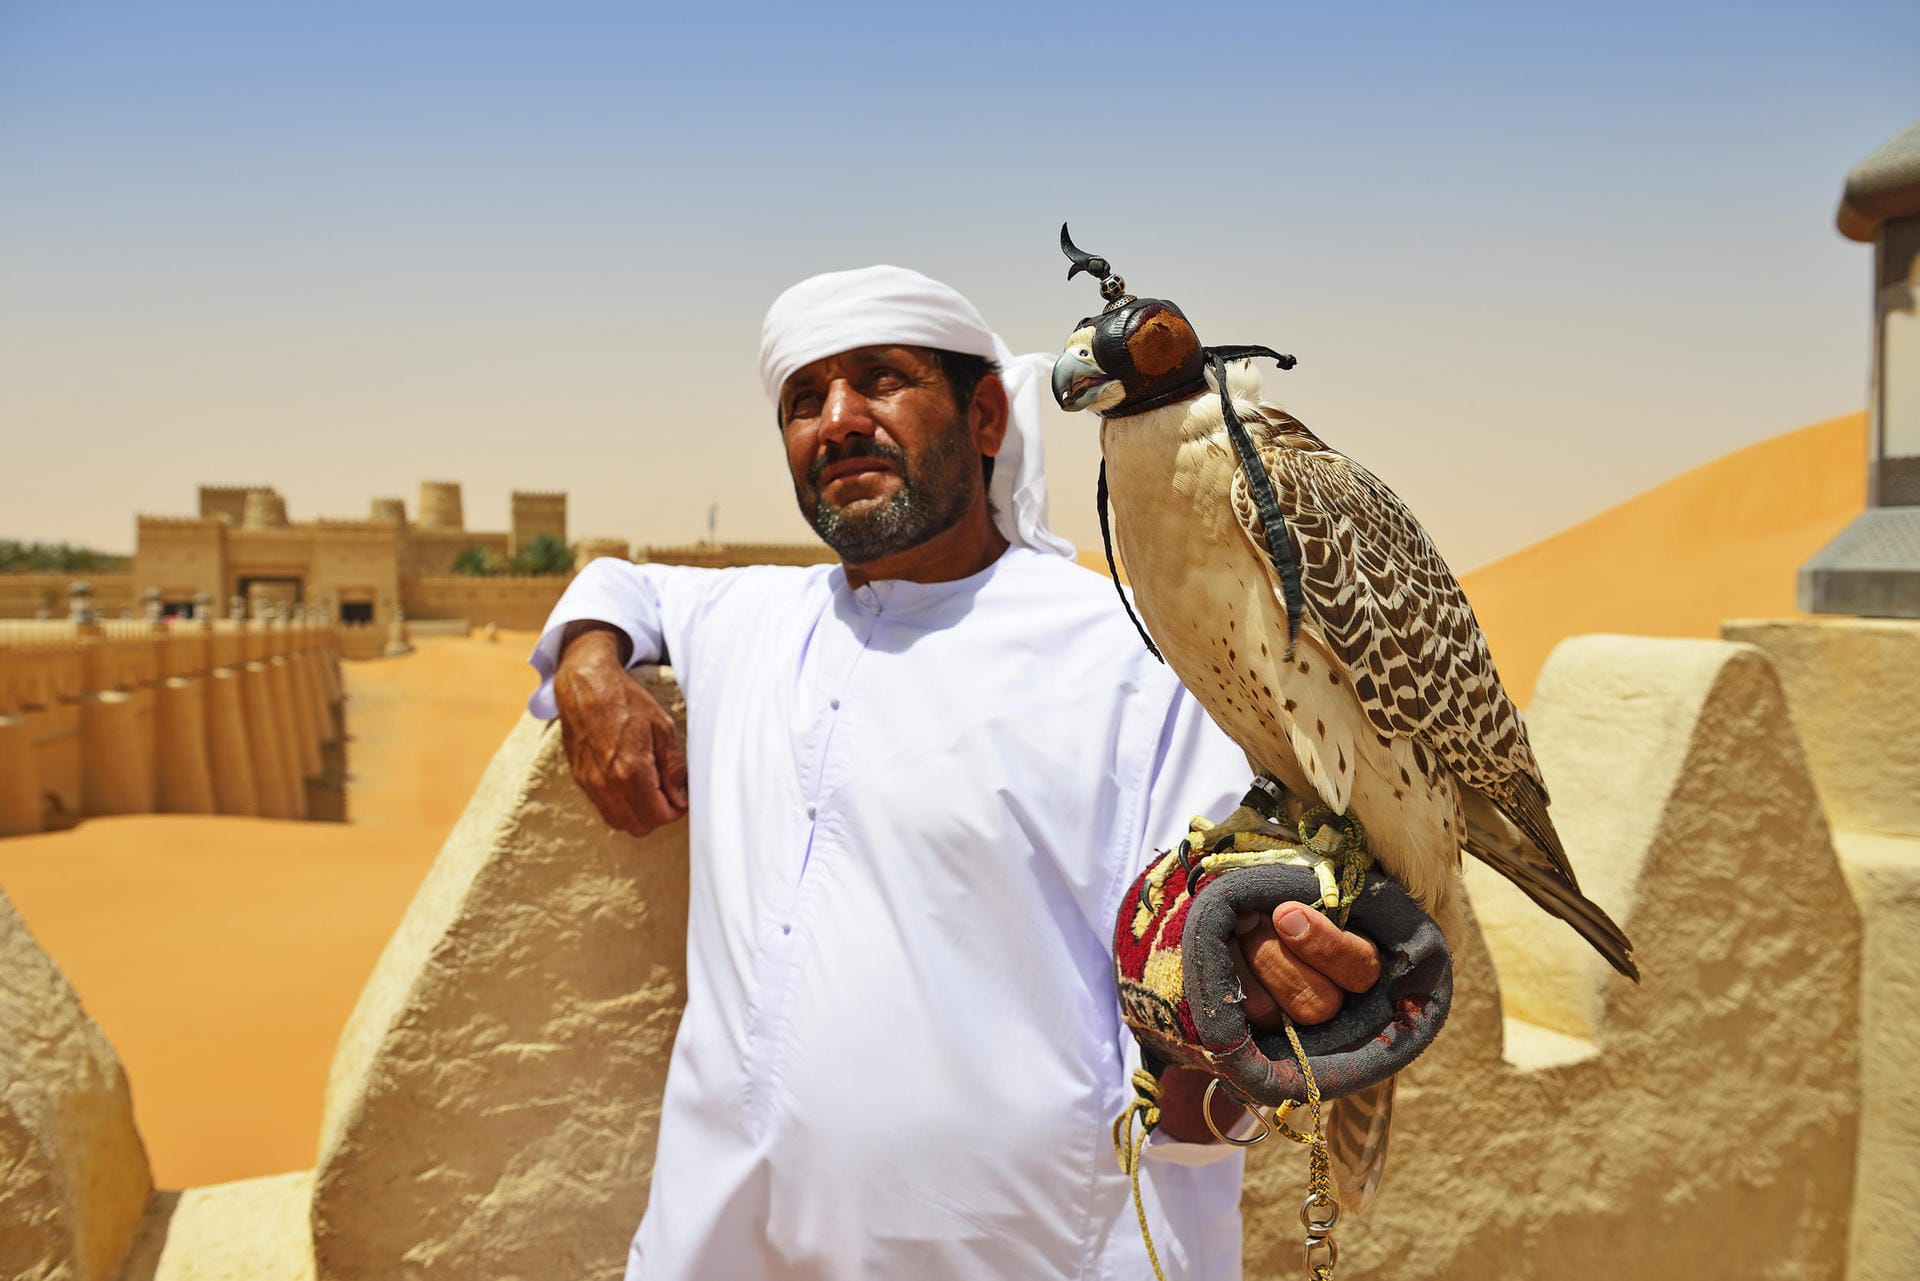 Auch in den Vereinigten Arabischen Emiraten hat die Falknerei eine sehr lange Tradition, lässt sich bis ins 13. Jahrhundert vor Christi belegen.